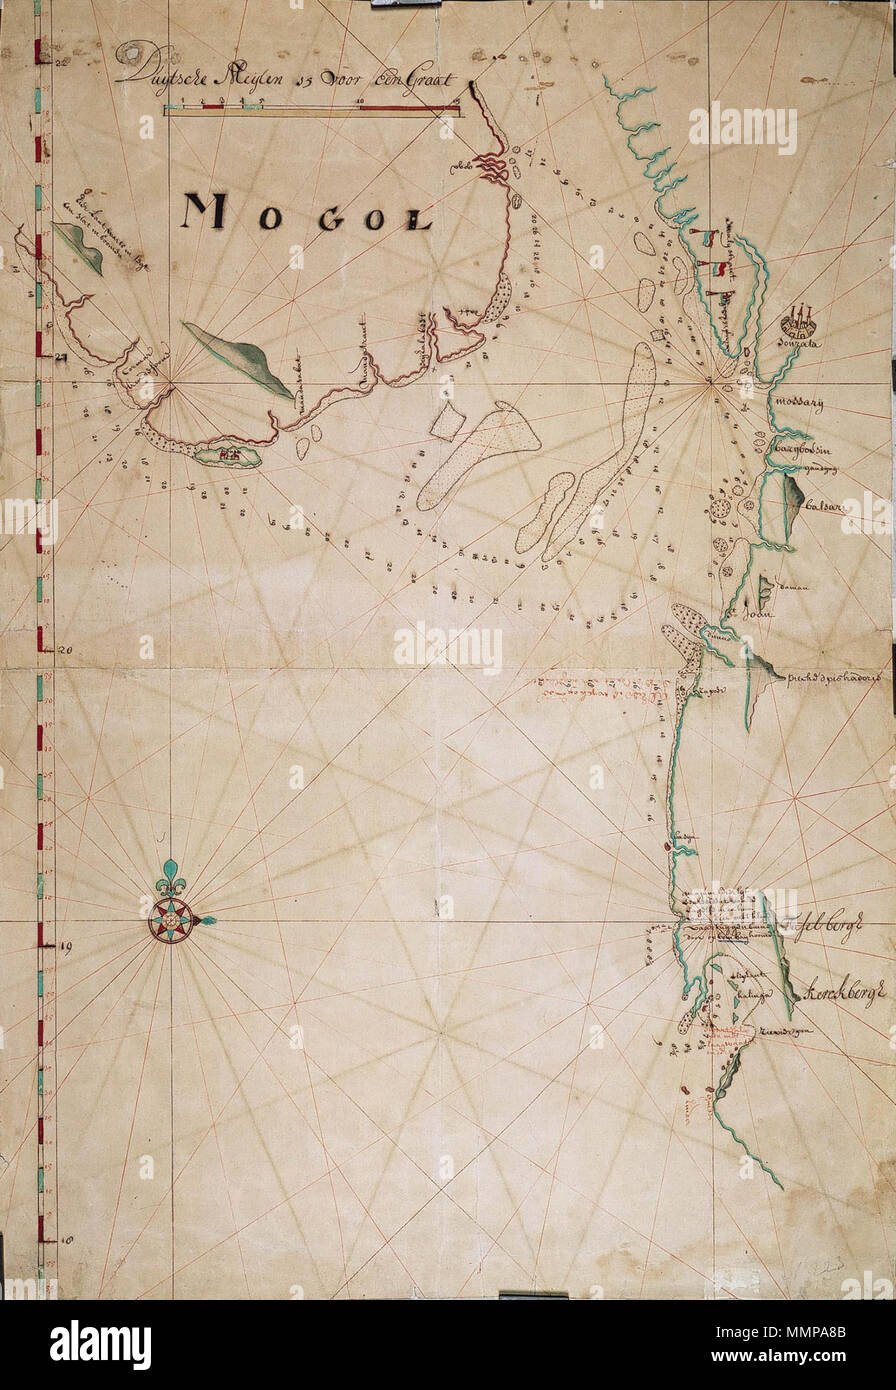 Kaart Van De Kust Bij Xiamen, 1632 Mont Van Der Rivier Chincheo In China  (Titel Op Object) Map Of The Coast Of China In Xiamen May 1632. Right The  Island Of Quemoy.